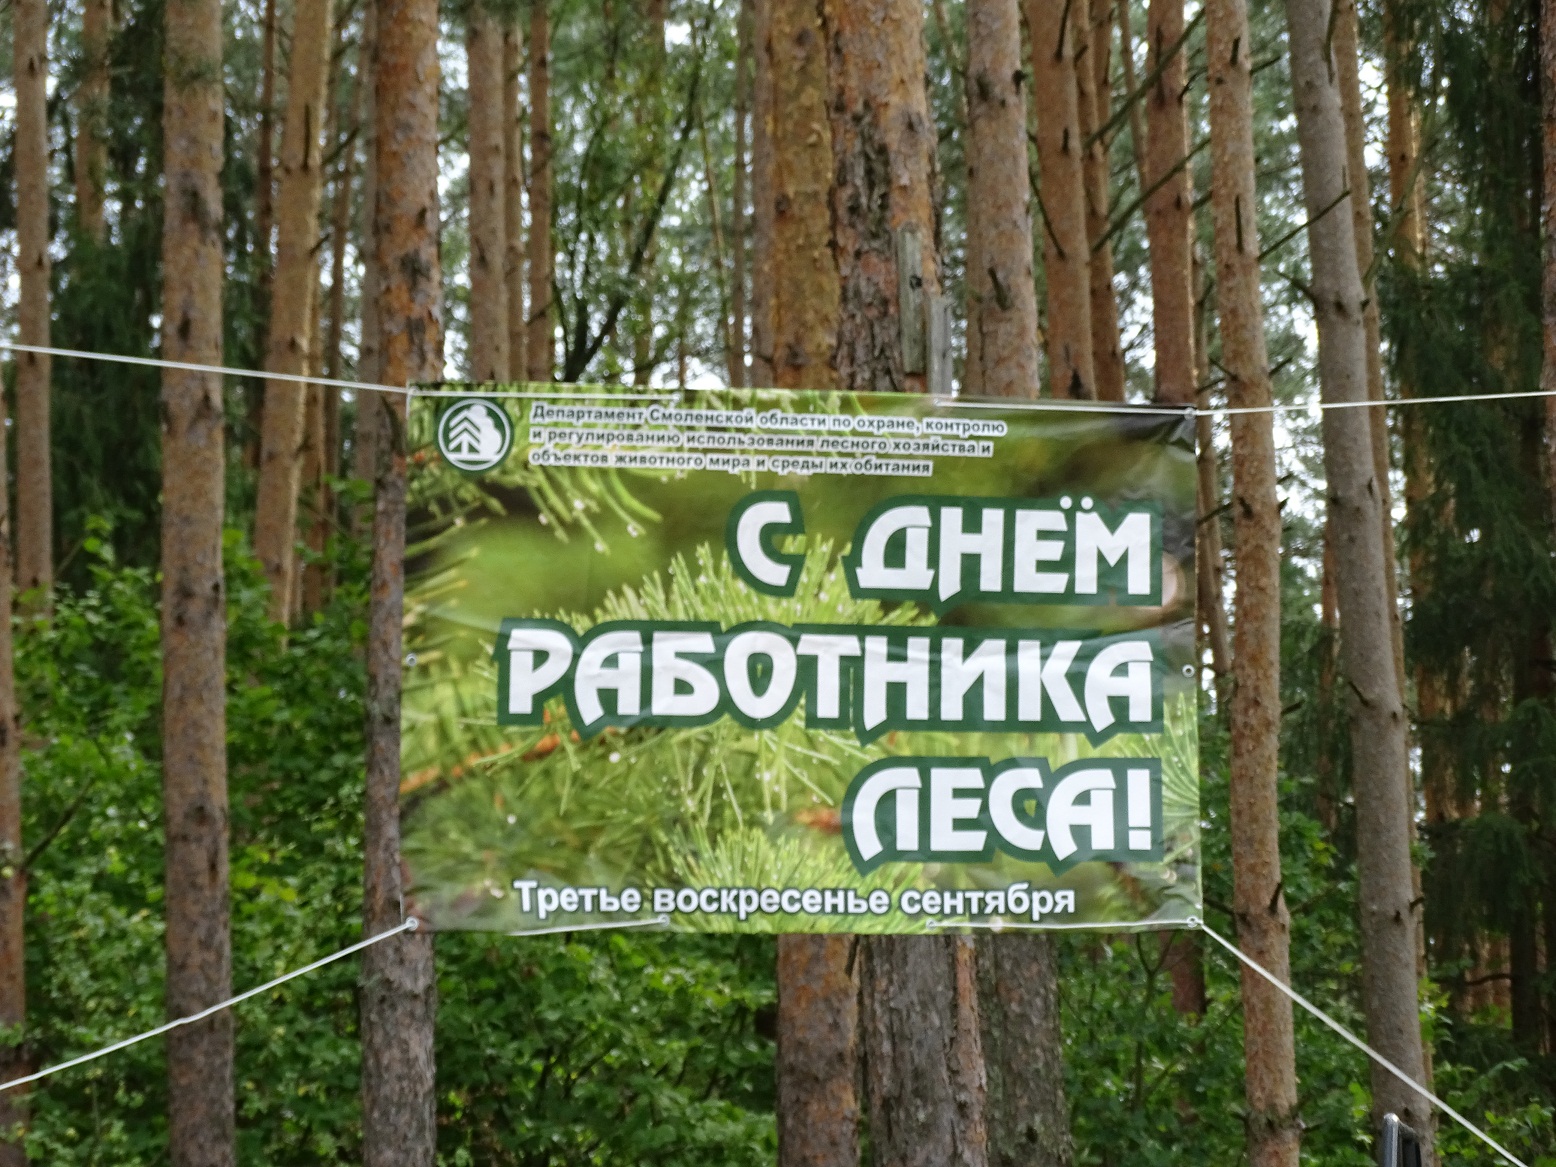 Работники леса баннер